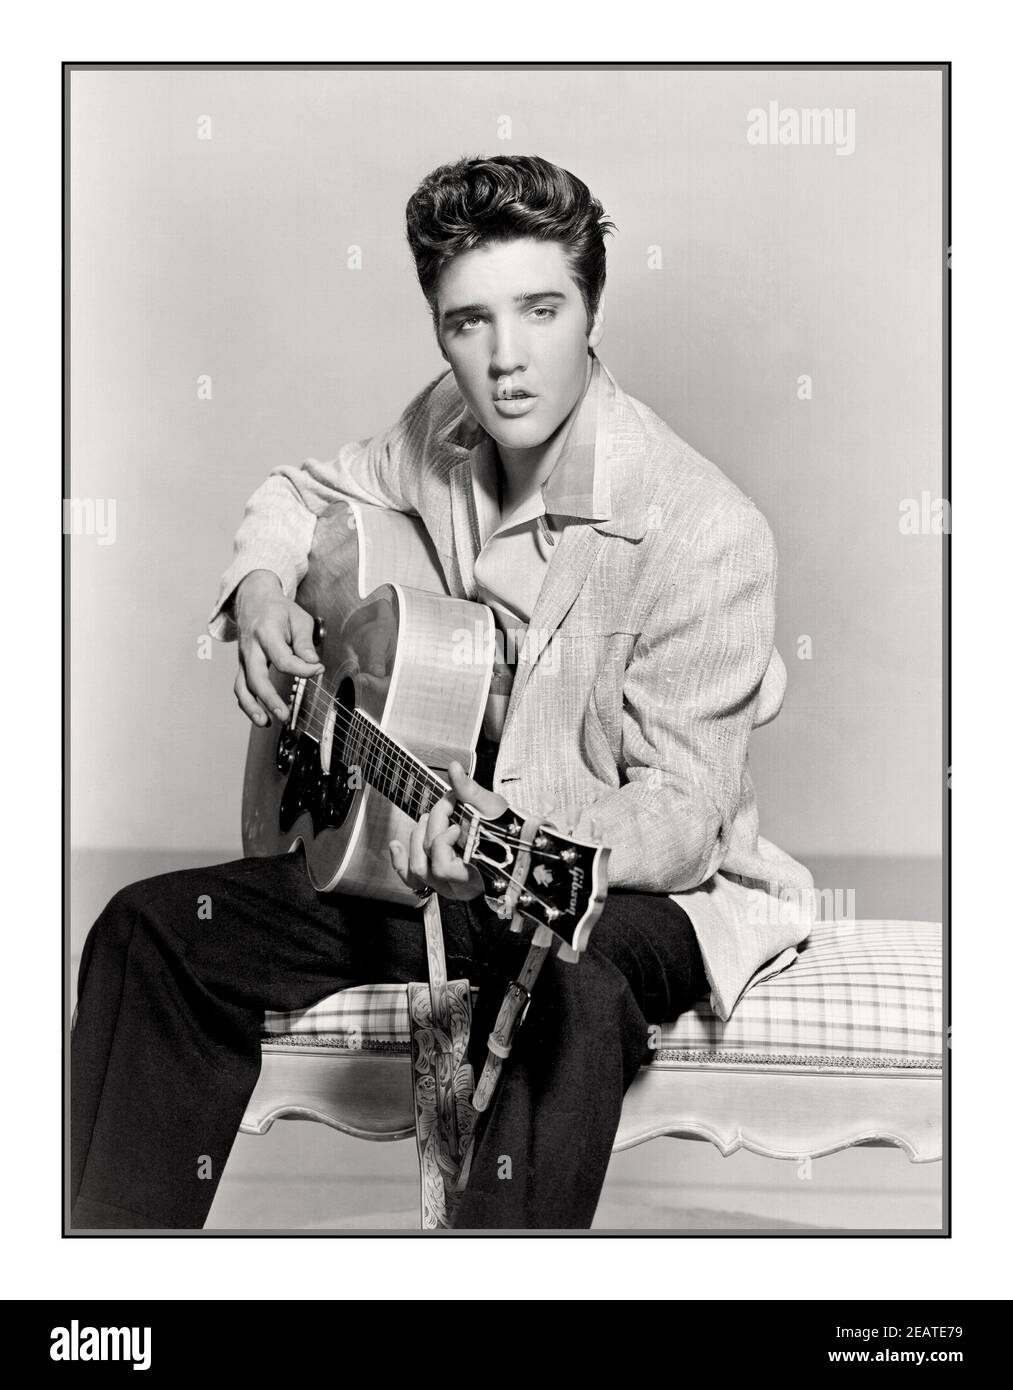 Lo studio di pubblicità B&W di Elvis Presley 1950 è ancora. King of Rock & Roll Holding suonare una chitarra in posa per foto promozionali Still America USA. Elvis Aaron Presley (Elvis, 8 gennaio 1935 – Elvis, 16 agosto 1977) è stato un . È considerato come una delle icone culturali più significative del ventesimo secolo ed è spesso indicato come "il re del rock and roll" o semplicemente "il re". Foto Stock